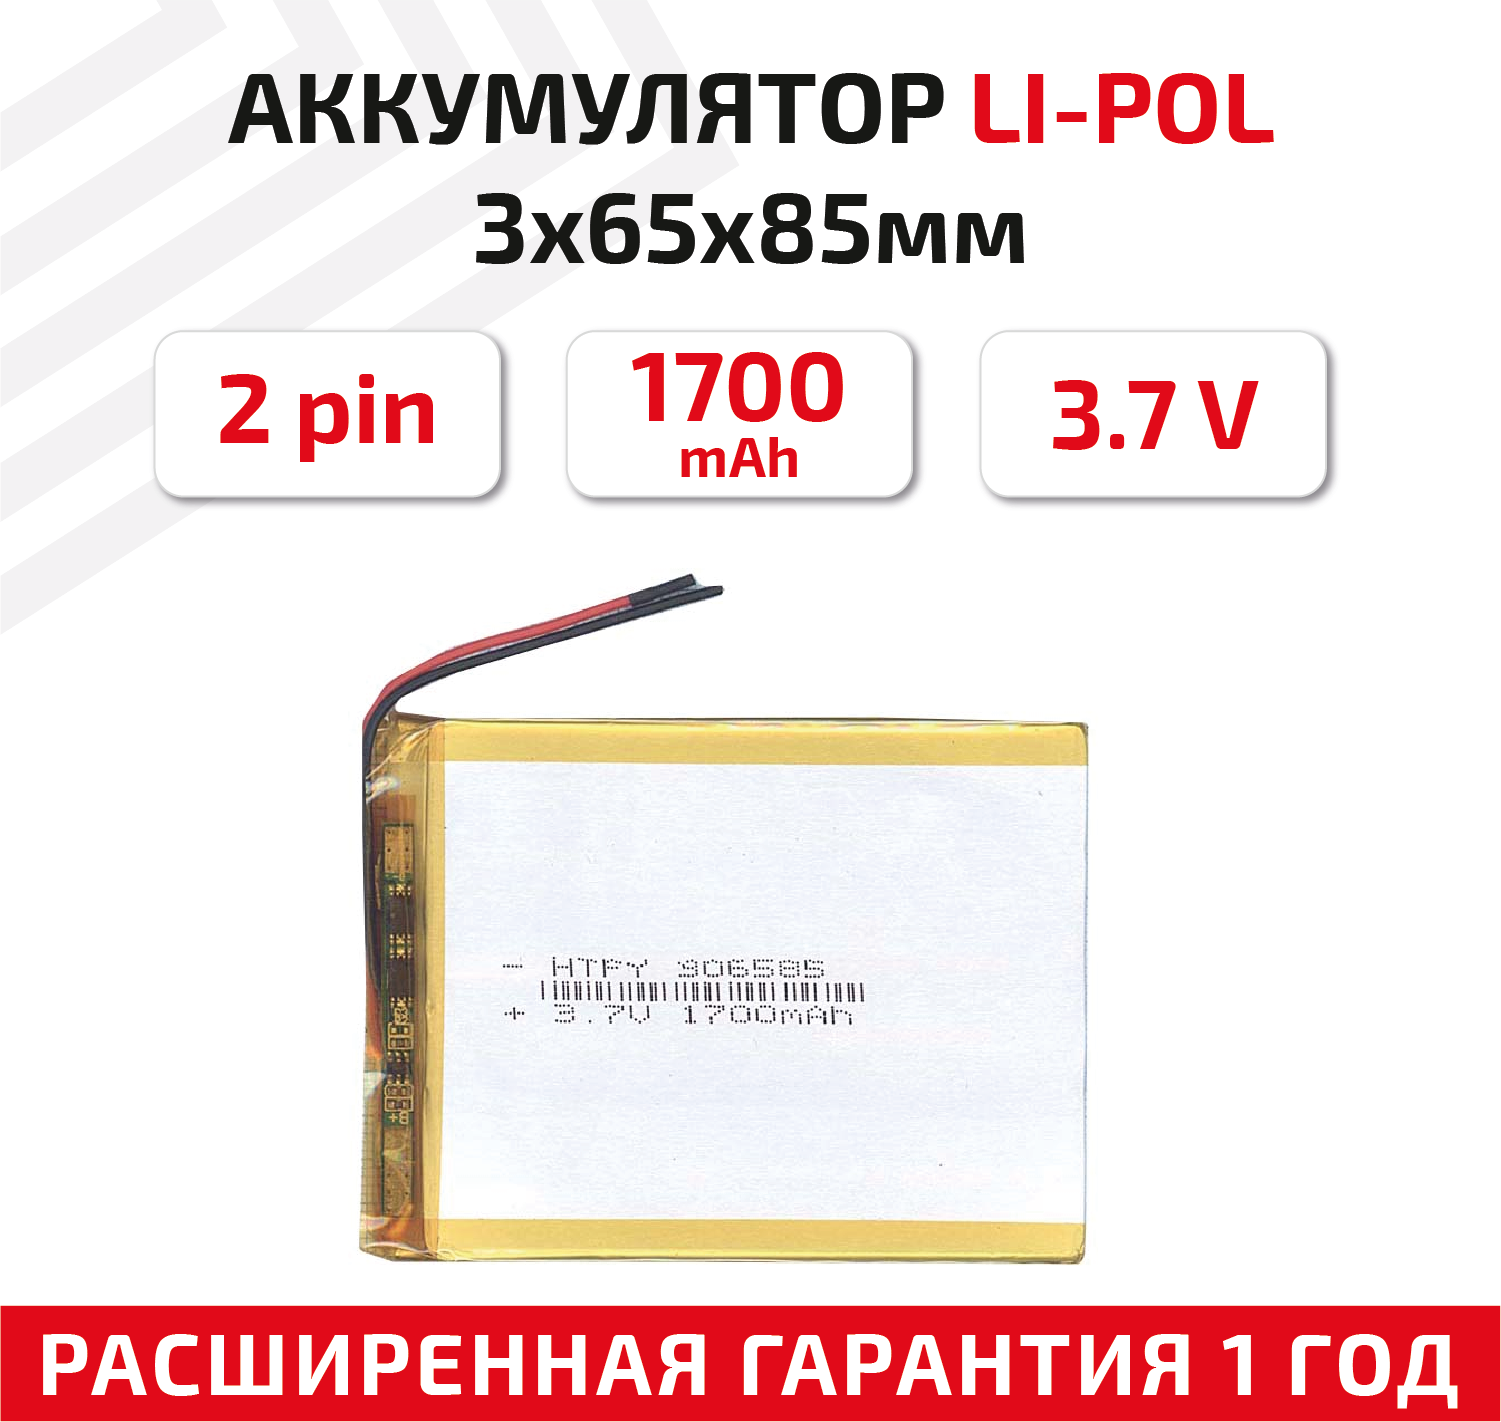 Универсальный аккумулятор (АКБ) для планшета, видеорегистратора и др, 3х65х85мм, 1700мАч, 3.7В, Li-Pol, 2pin (на 2 провода)